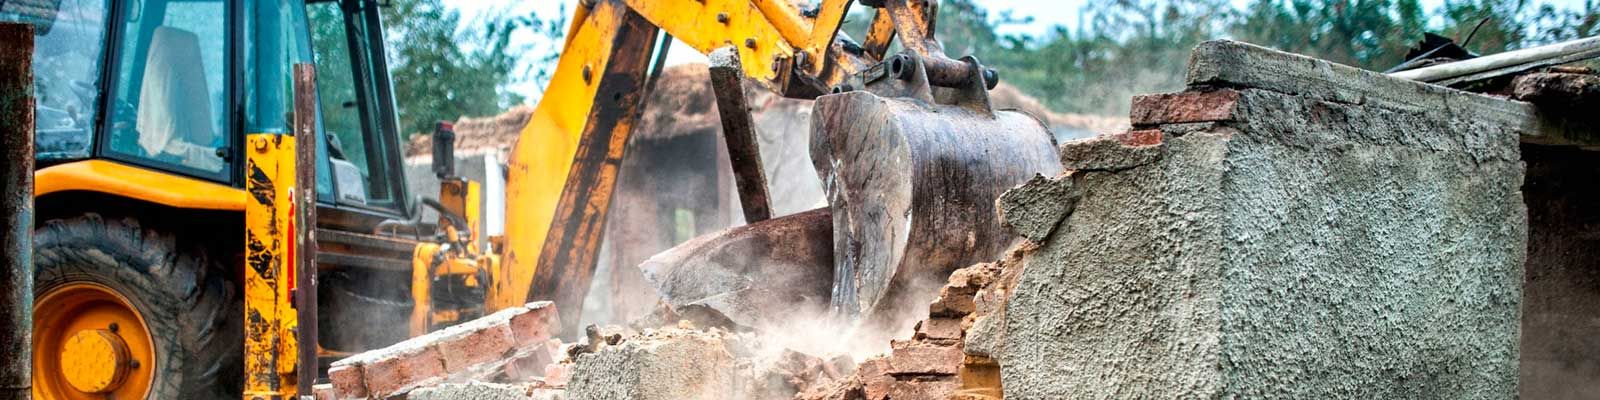 Excavacions Masdeu maquinaria removiendo escombros